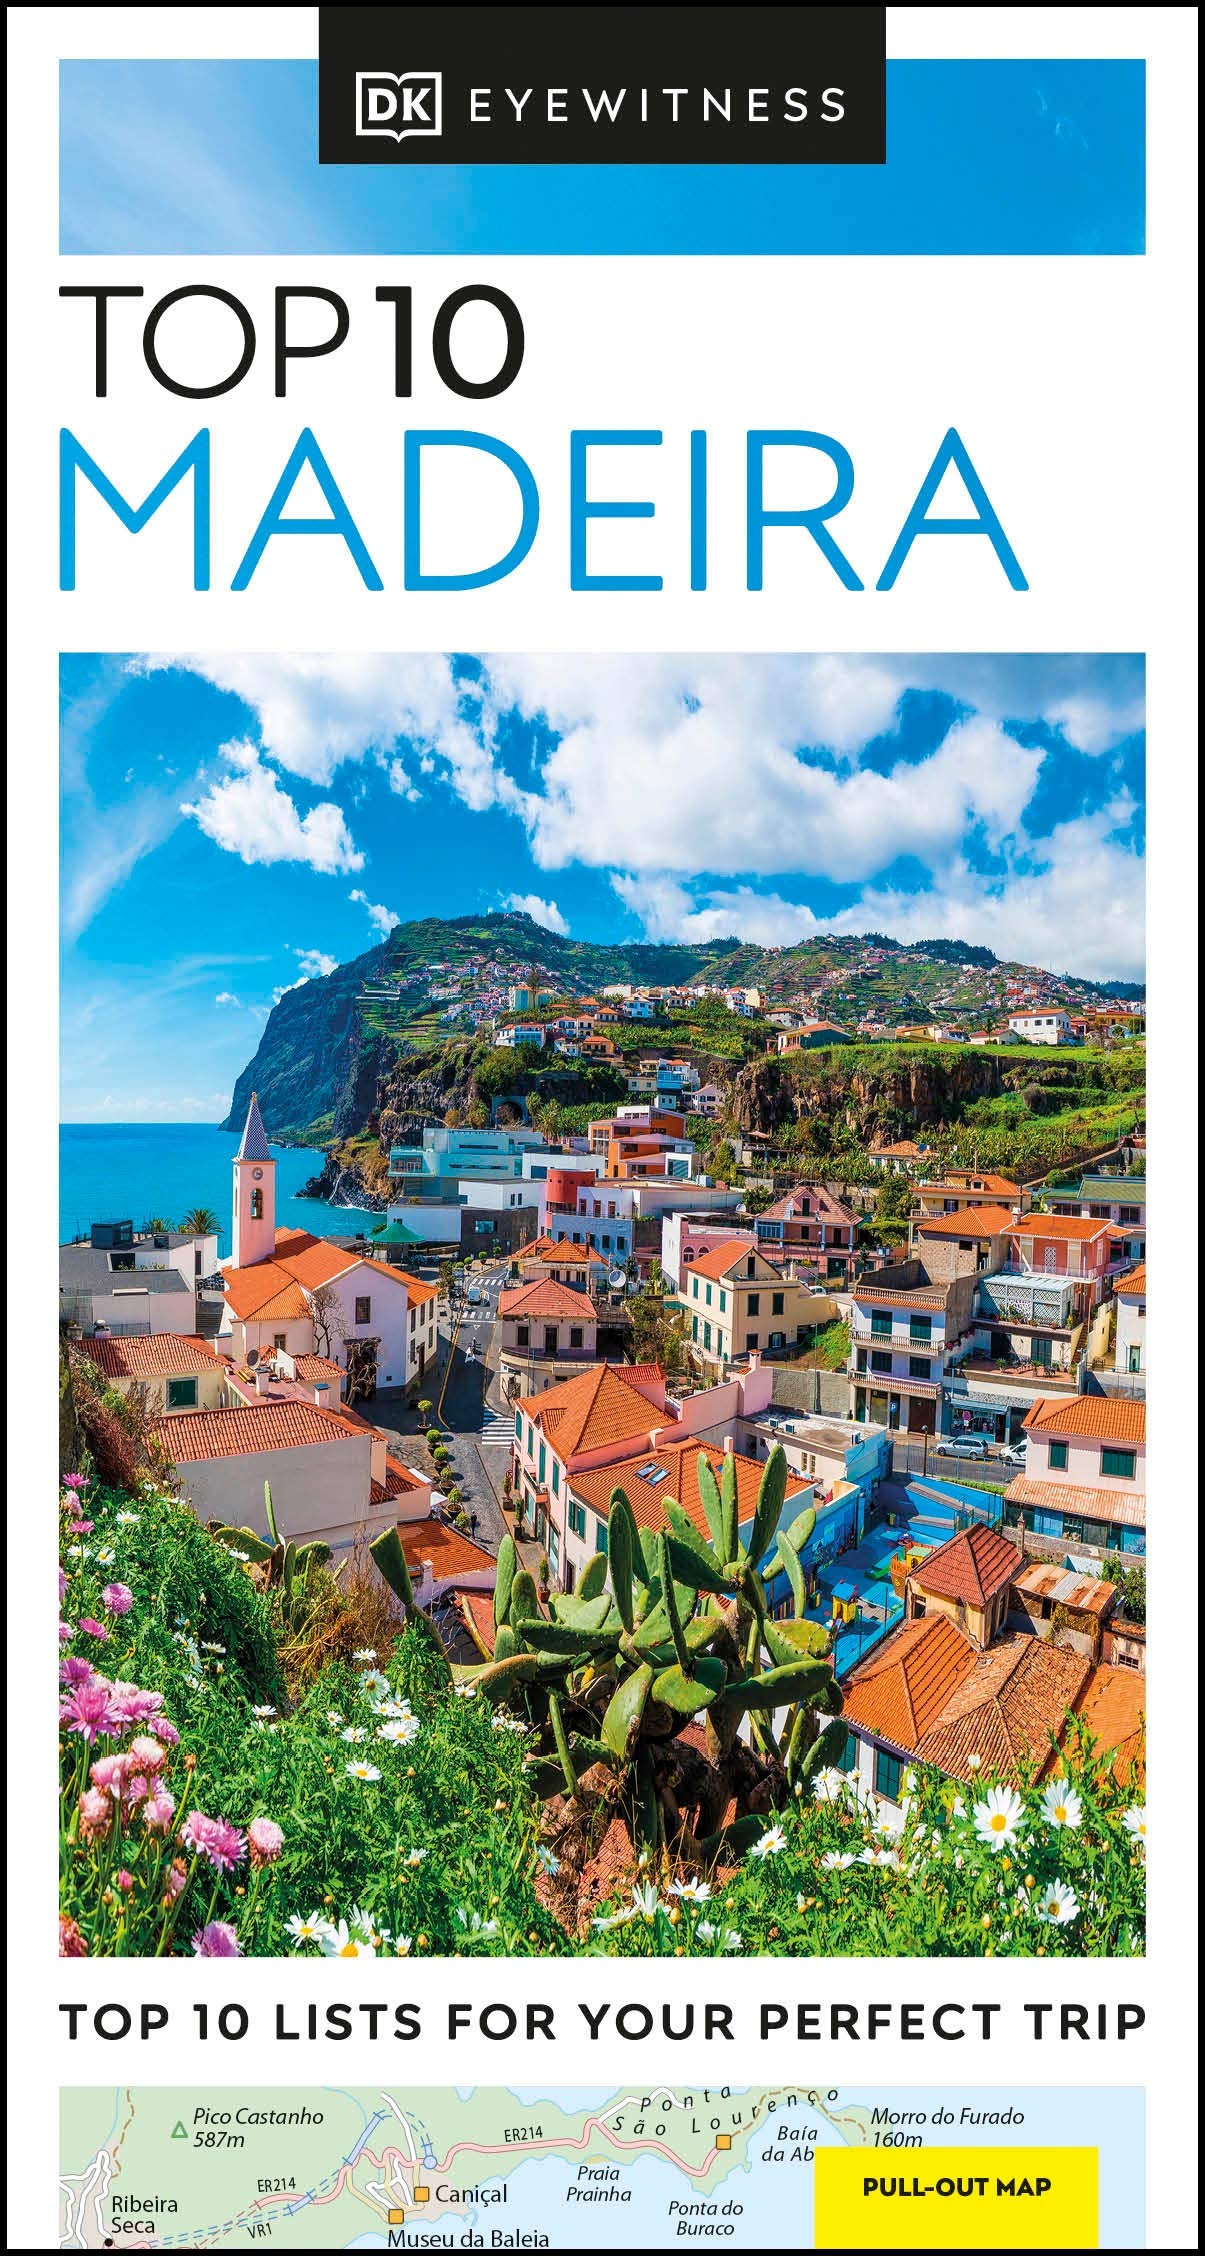 DK Eyewitness Top 10 Madeira |